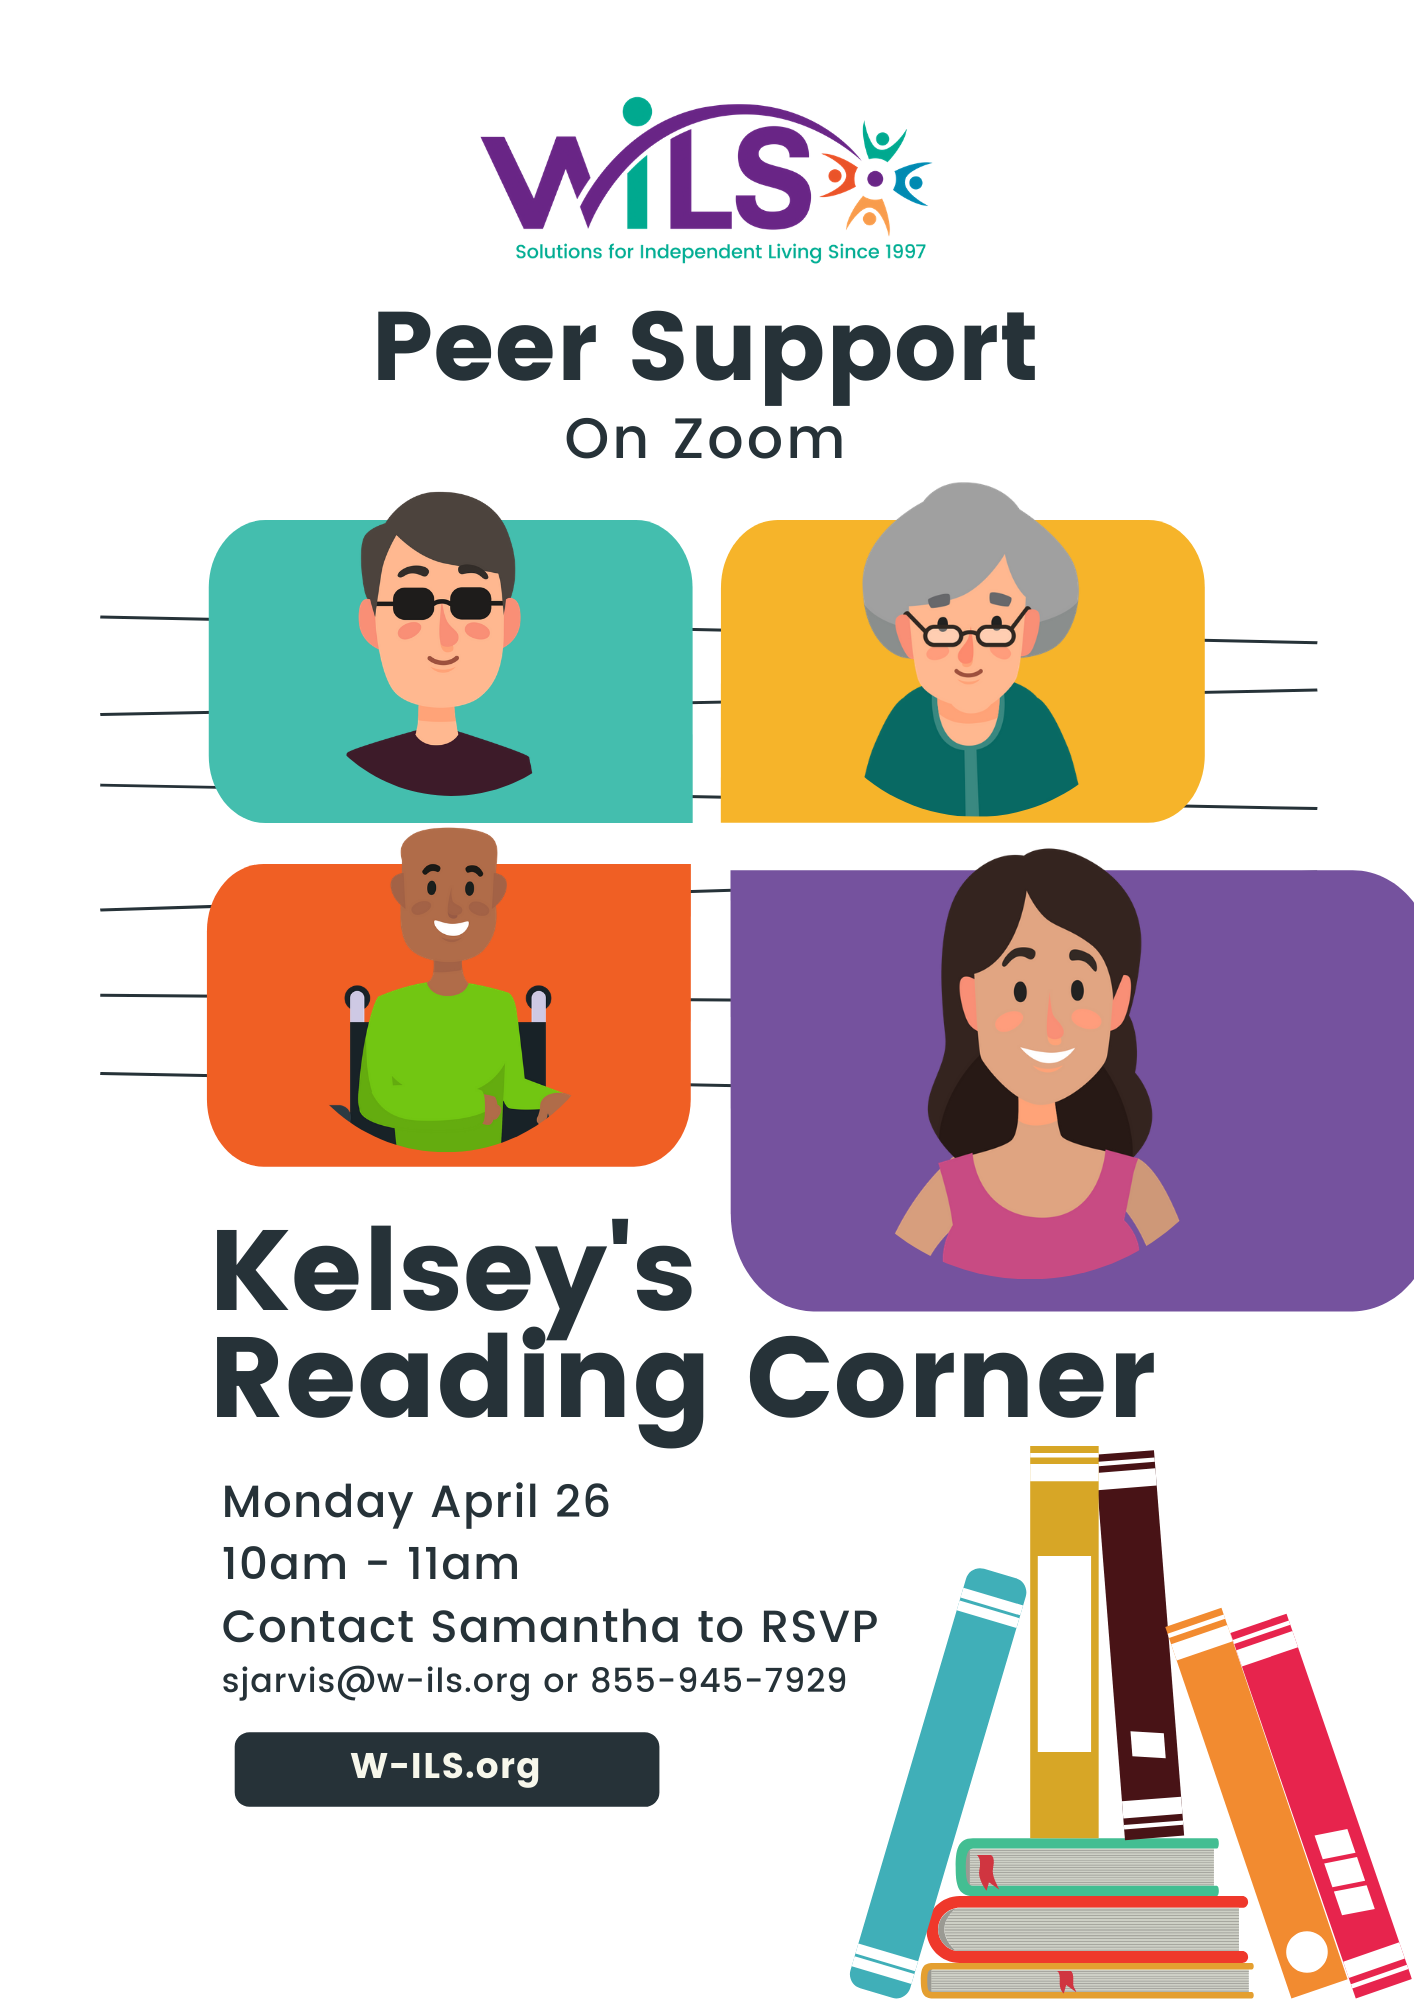 Kelsey's Reading Corner